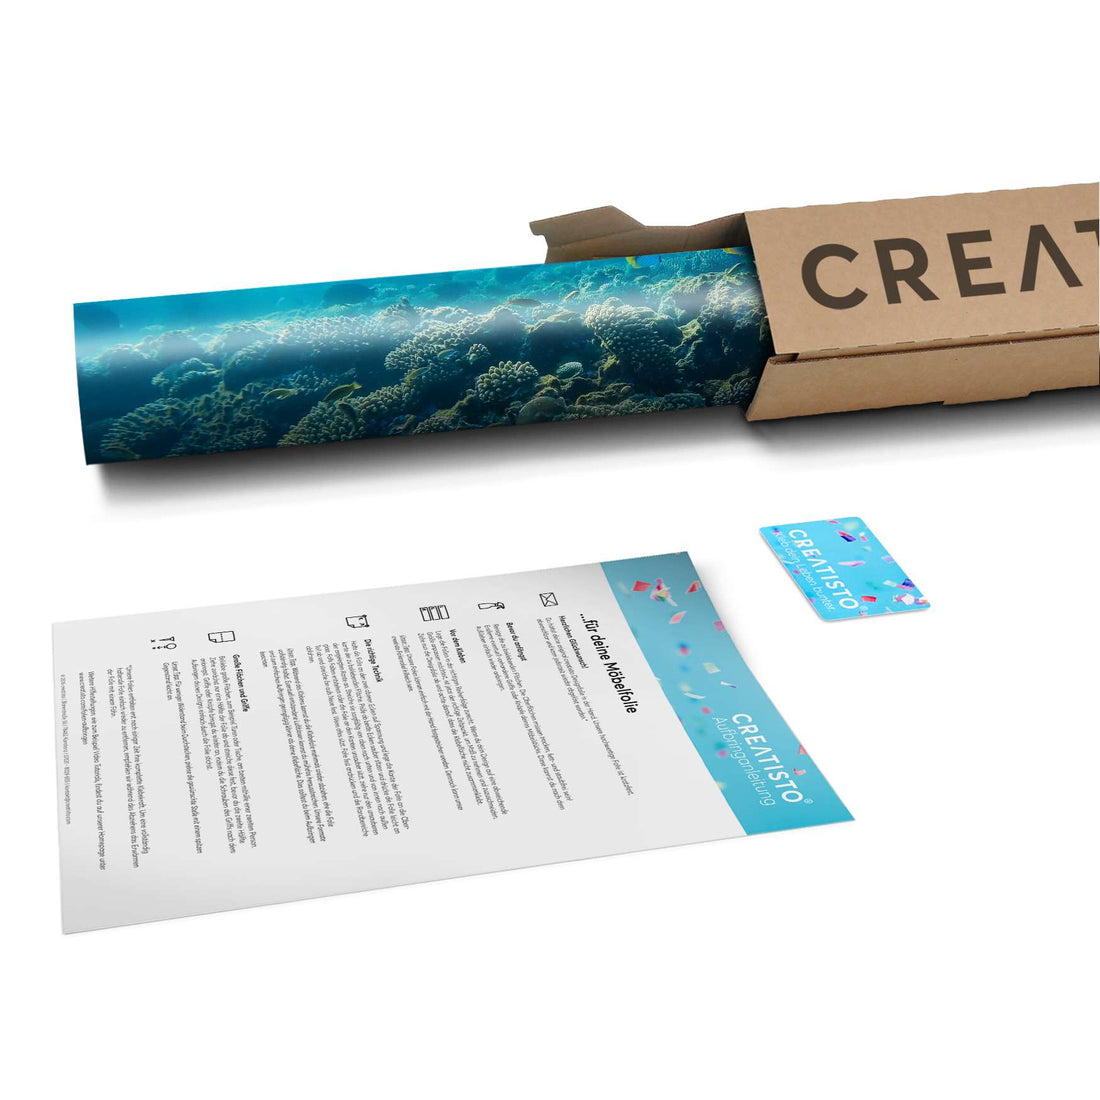 Klebefolie Underwater World - Paket - creatisto pds2